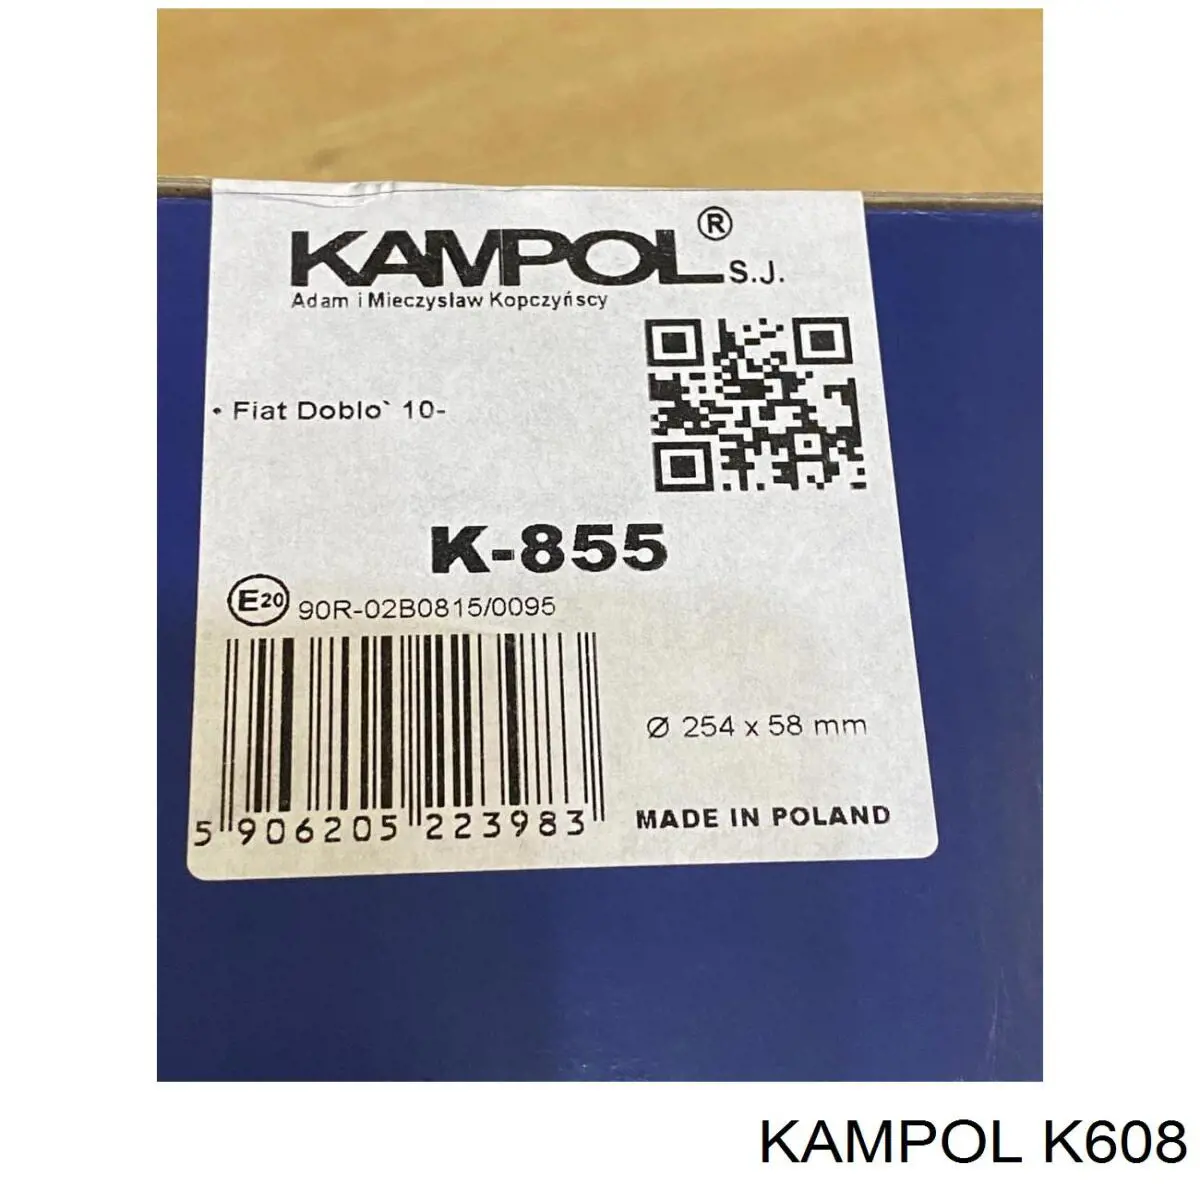 K608 Kampol zapatas de frenos de tambor traseras